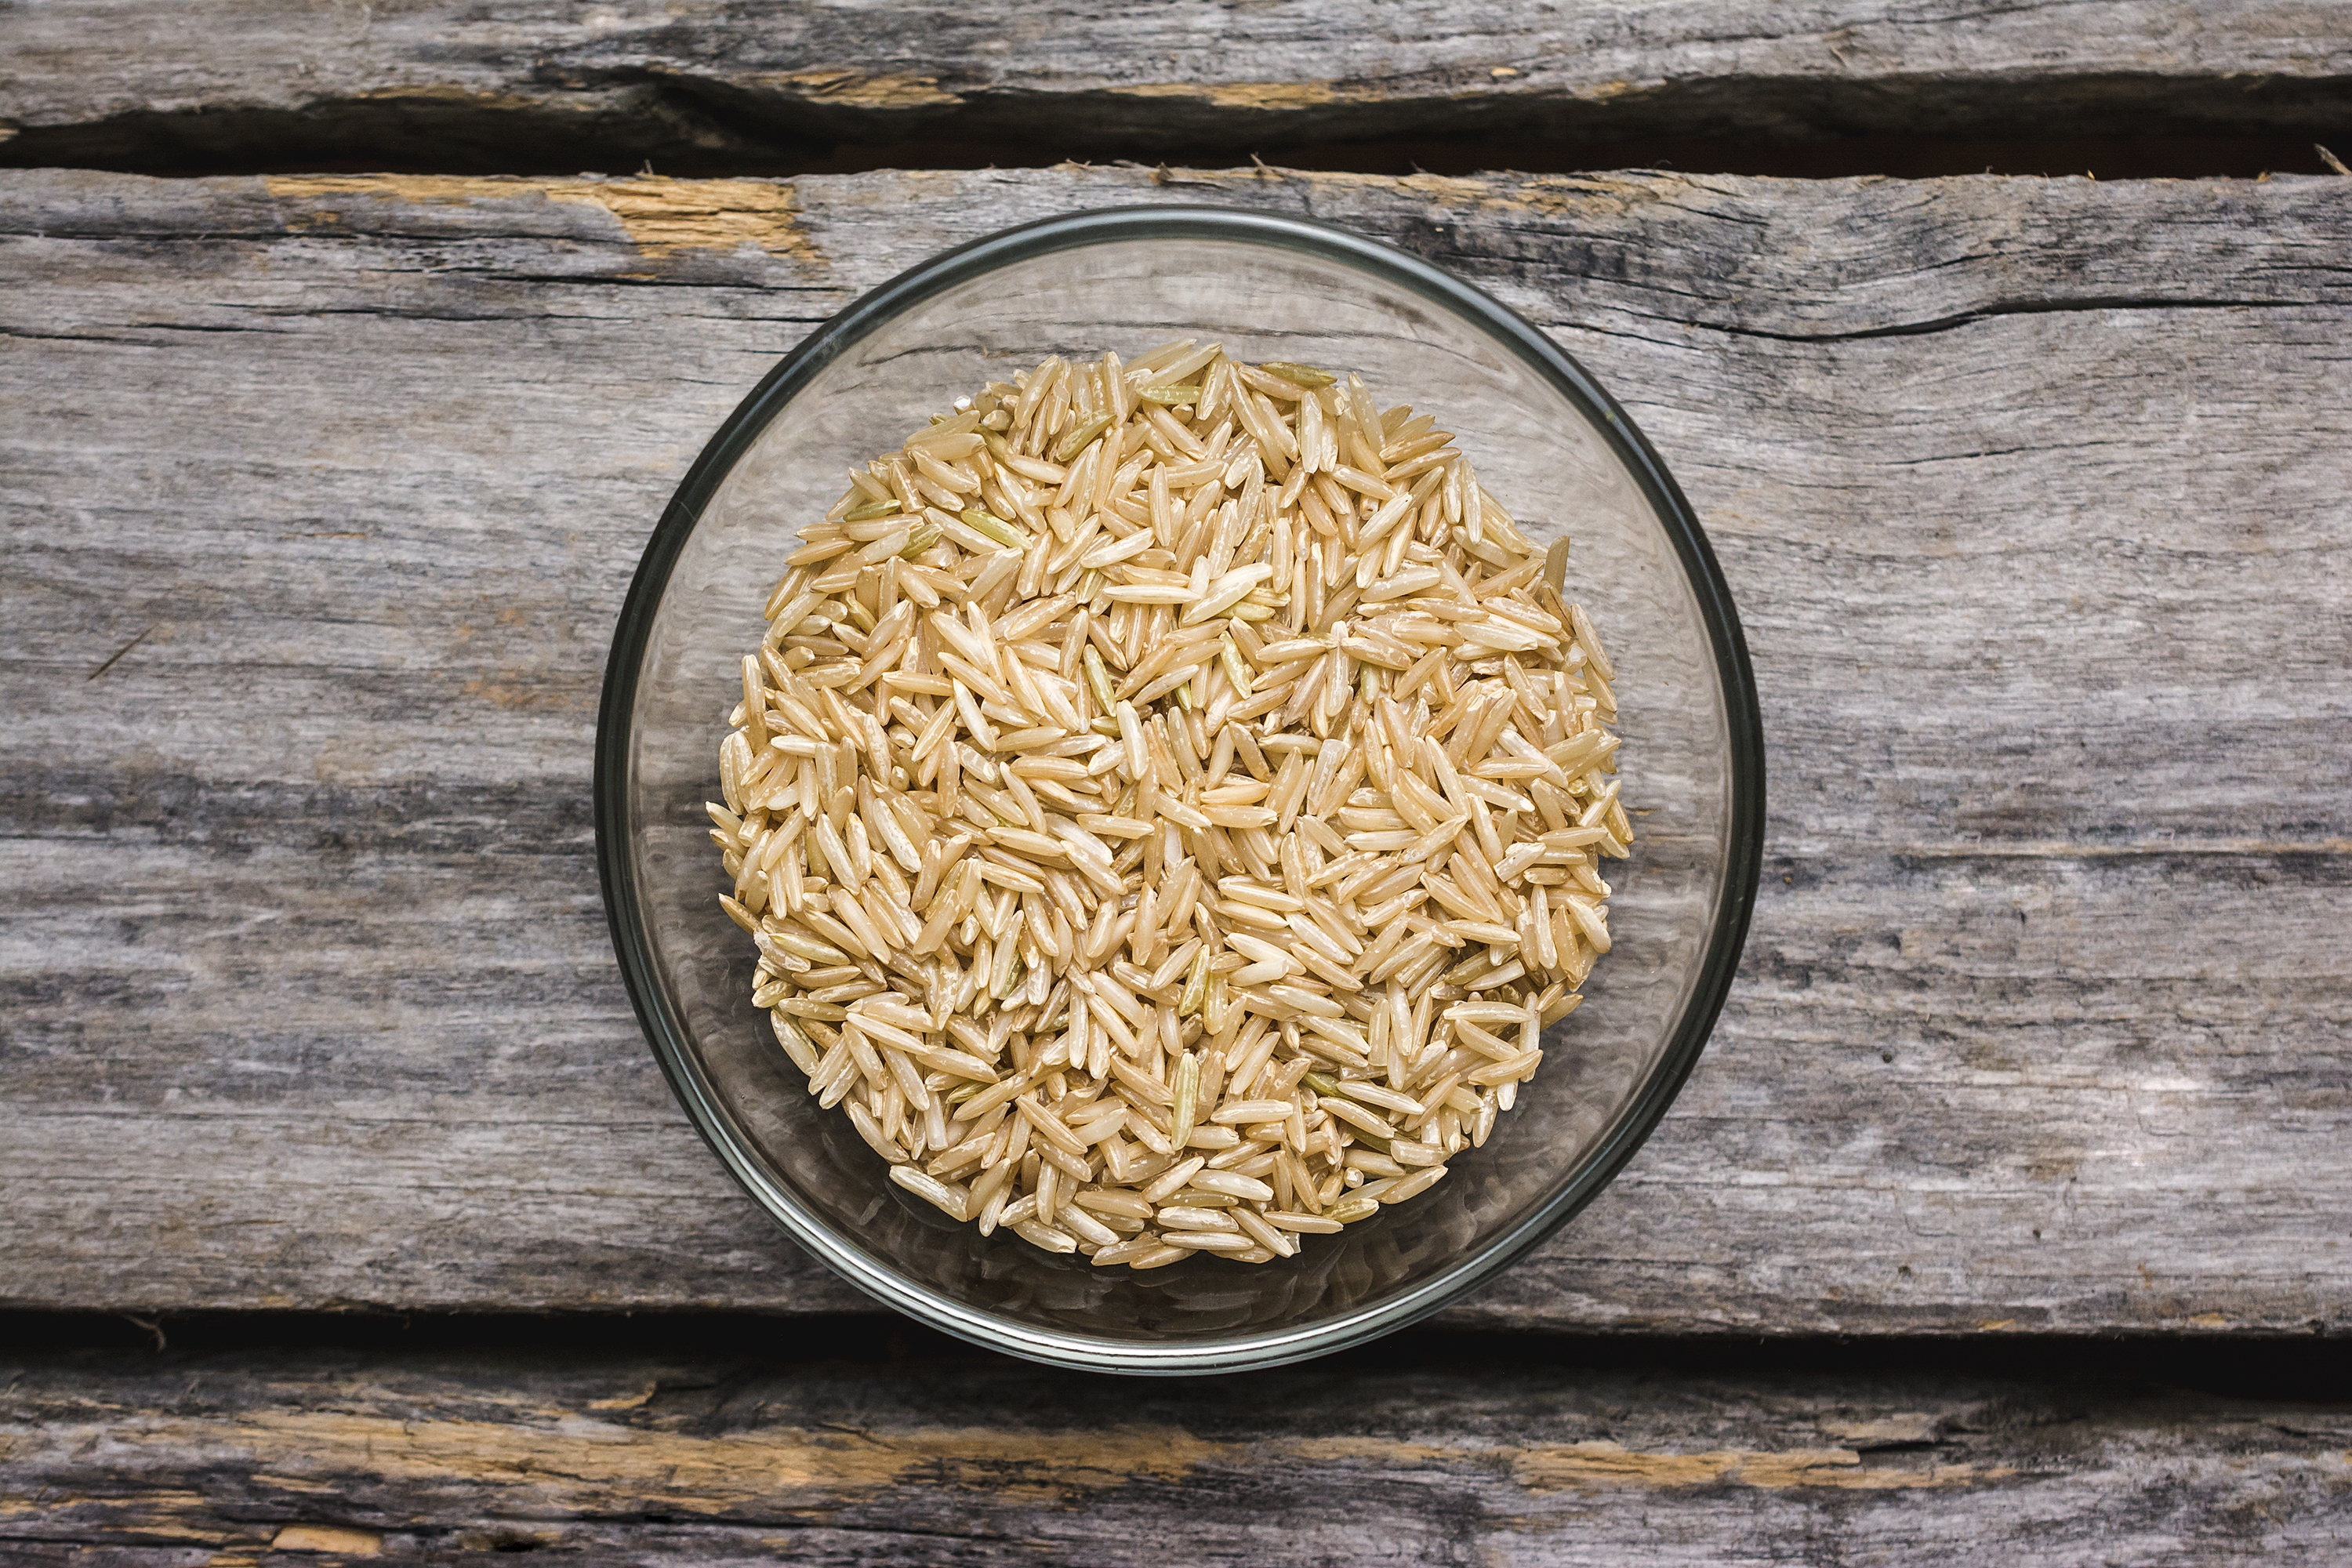 El arroz integral, según estudios anteriores, es un buen alimento para bajar de peso, normalizar los niveles de colesterol y eliminar la inflamación (Pexels)